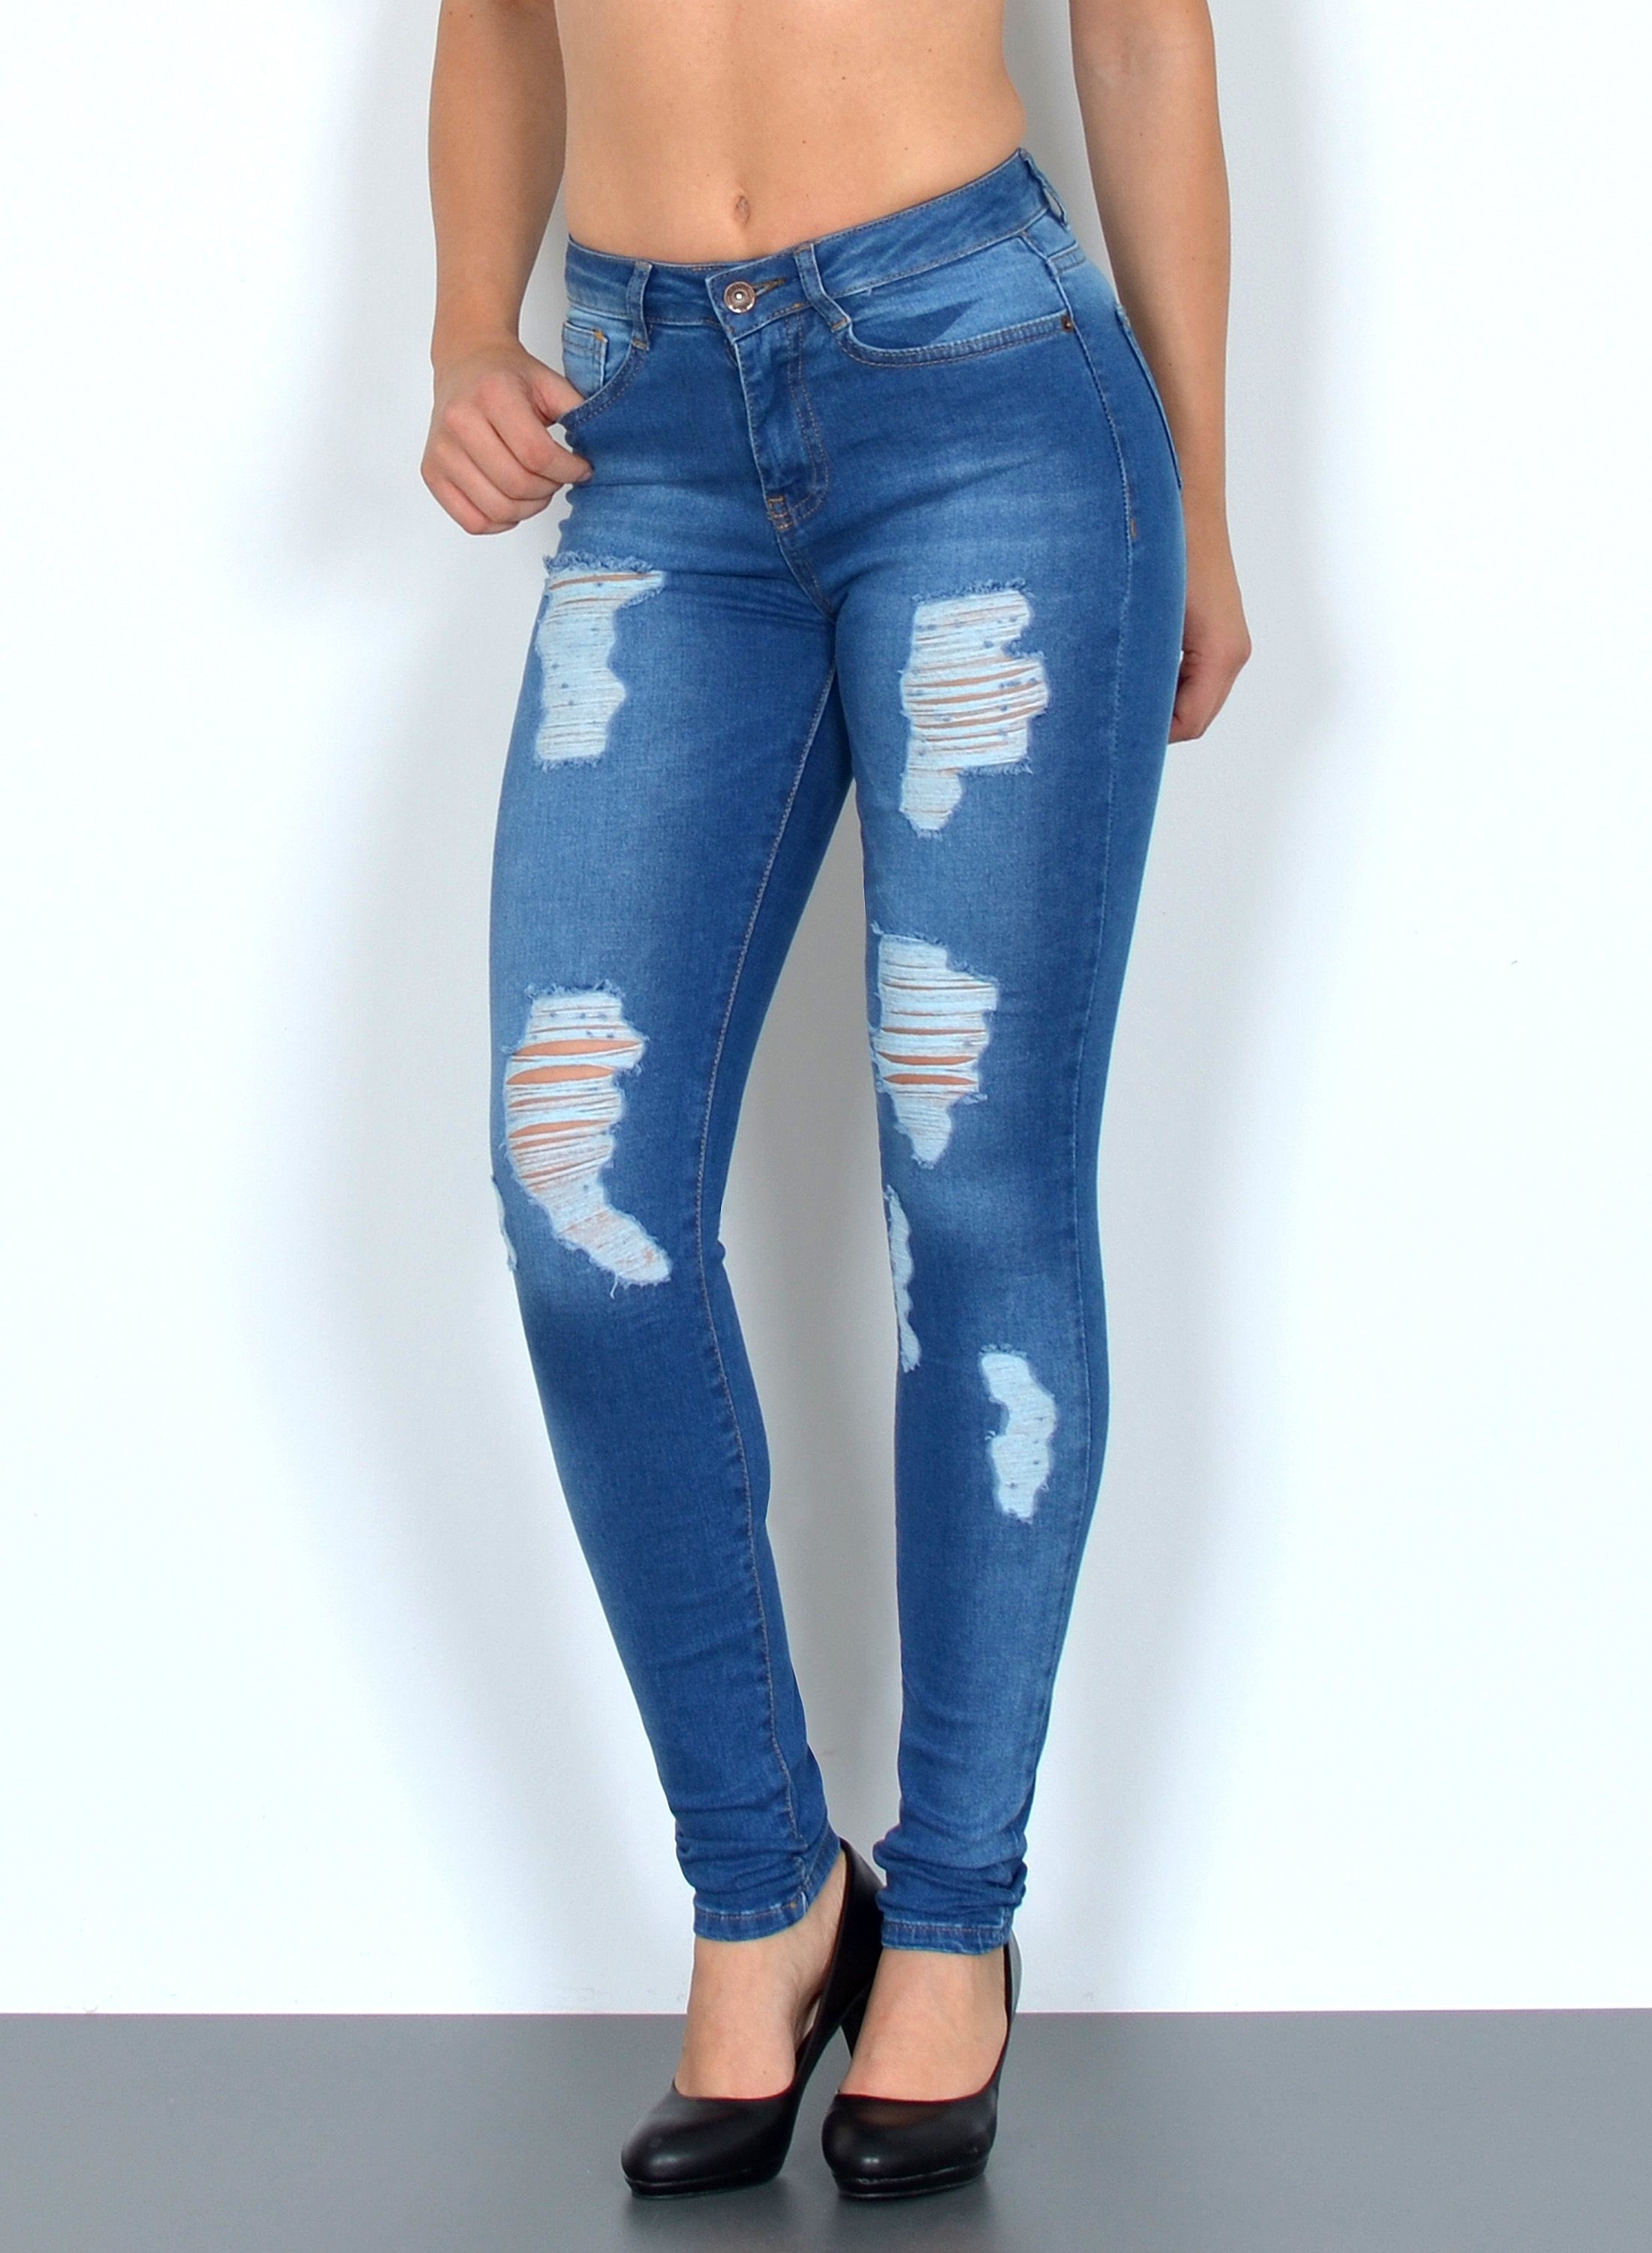 OTTO Damen Kleidung Hosen & Jeans Lange Hosen Stretchhosen Skinny-fit-Jeans »Skinny Fit Stretchhose« 